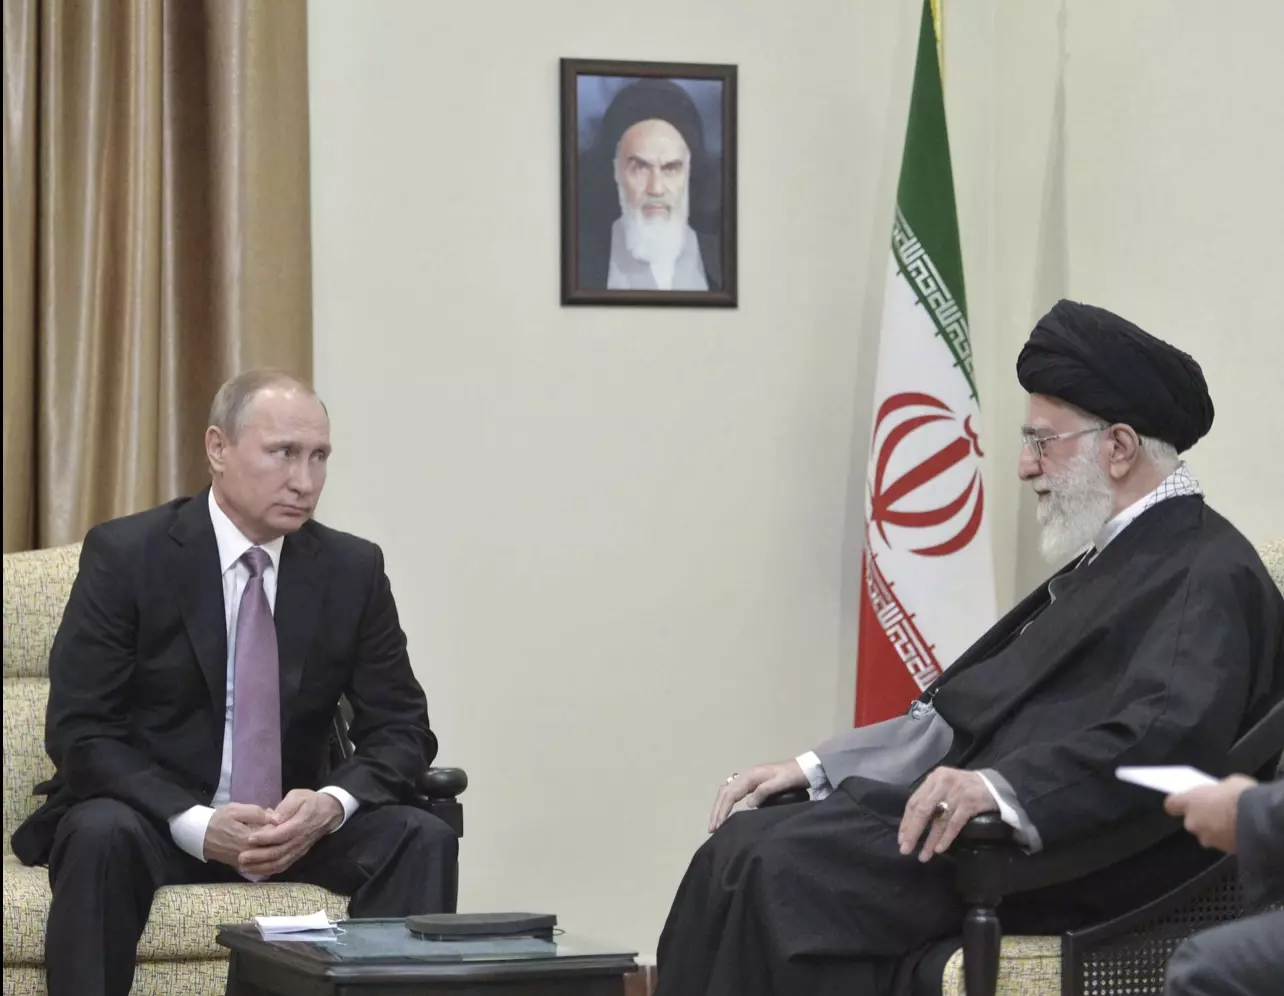 Tổng thống Nga Putin thăm Iran sau tuyên bố quay lưng với phương Tây